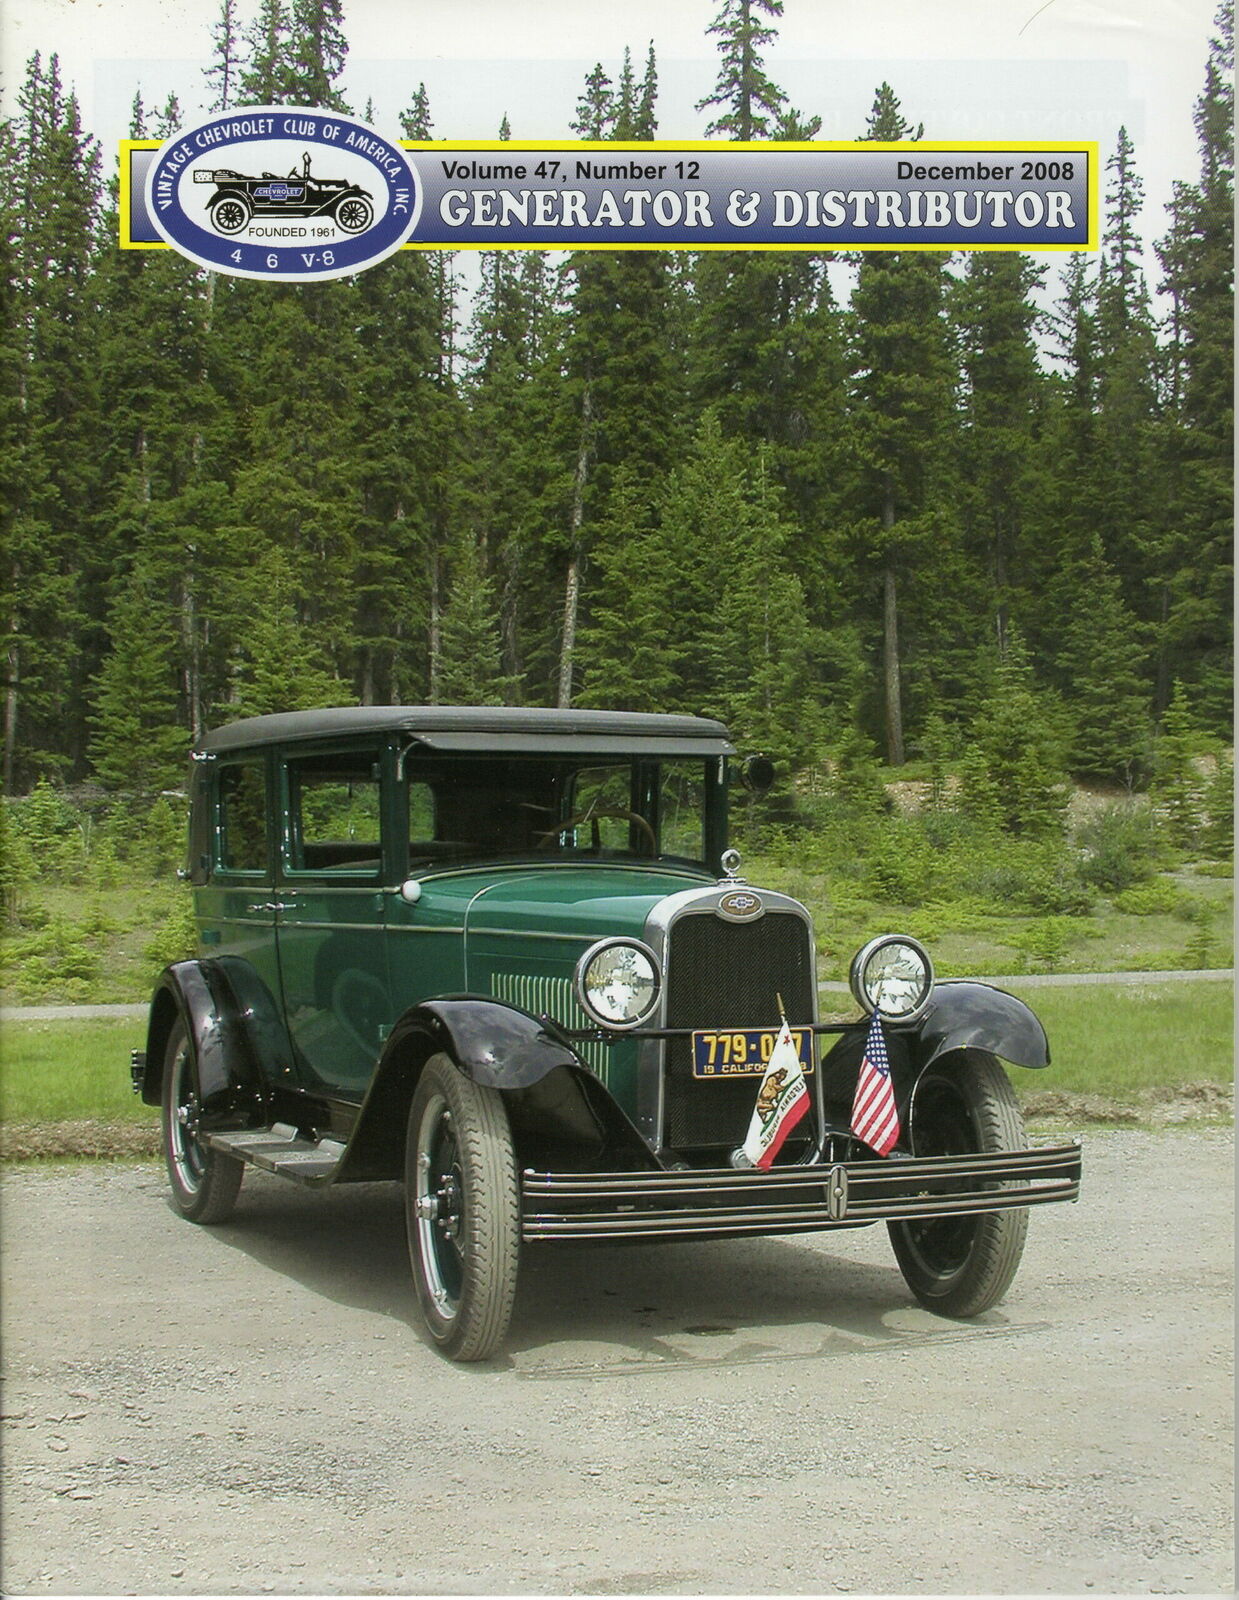 1928 IMPERIAL LANDAU - GENERATOR & DISTRIBUTOR MAGAZINE VOLUME 47, #12 DEC 2008 